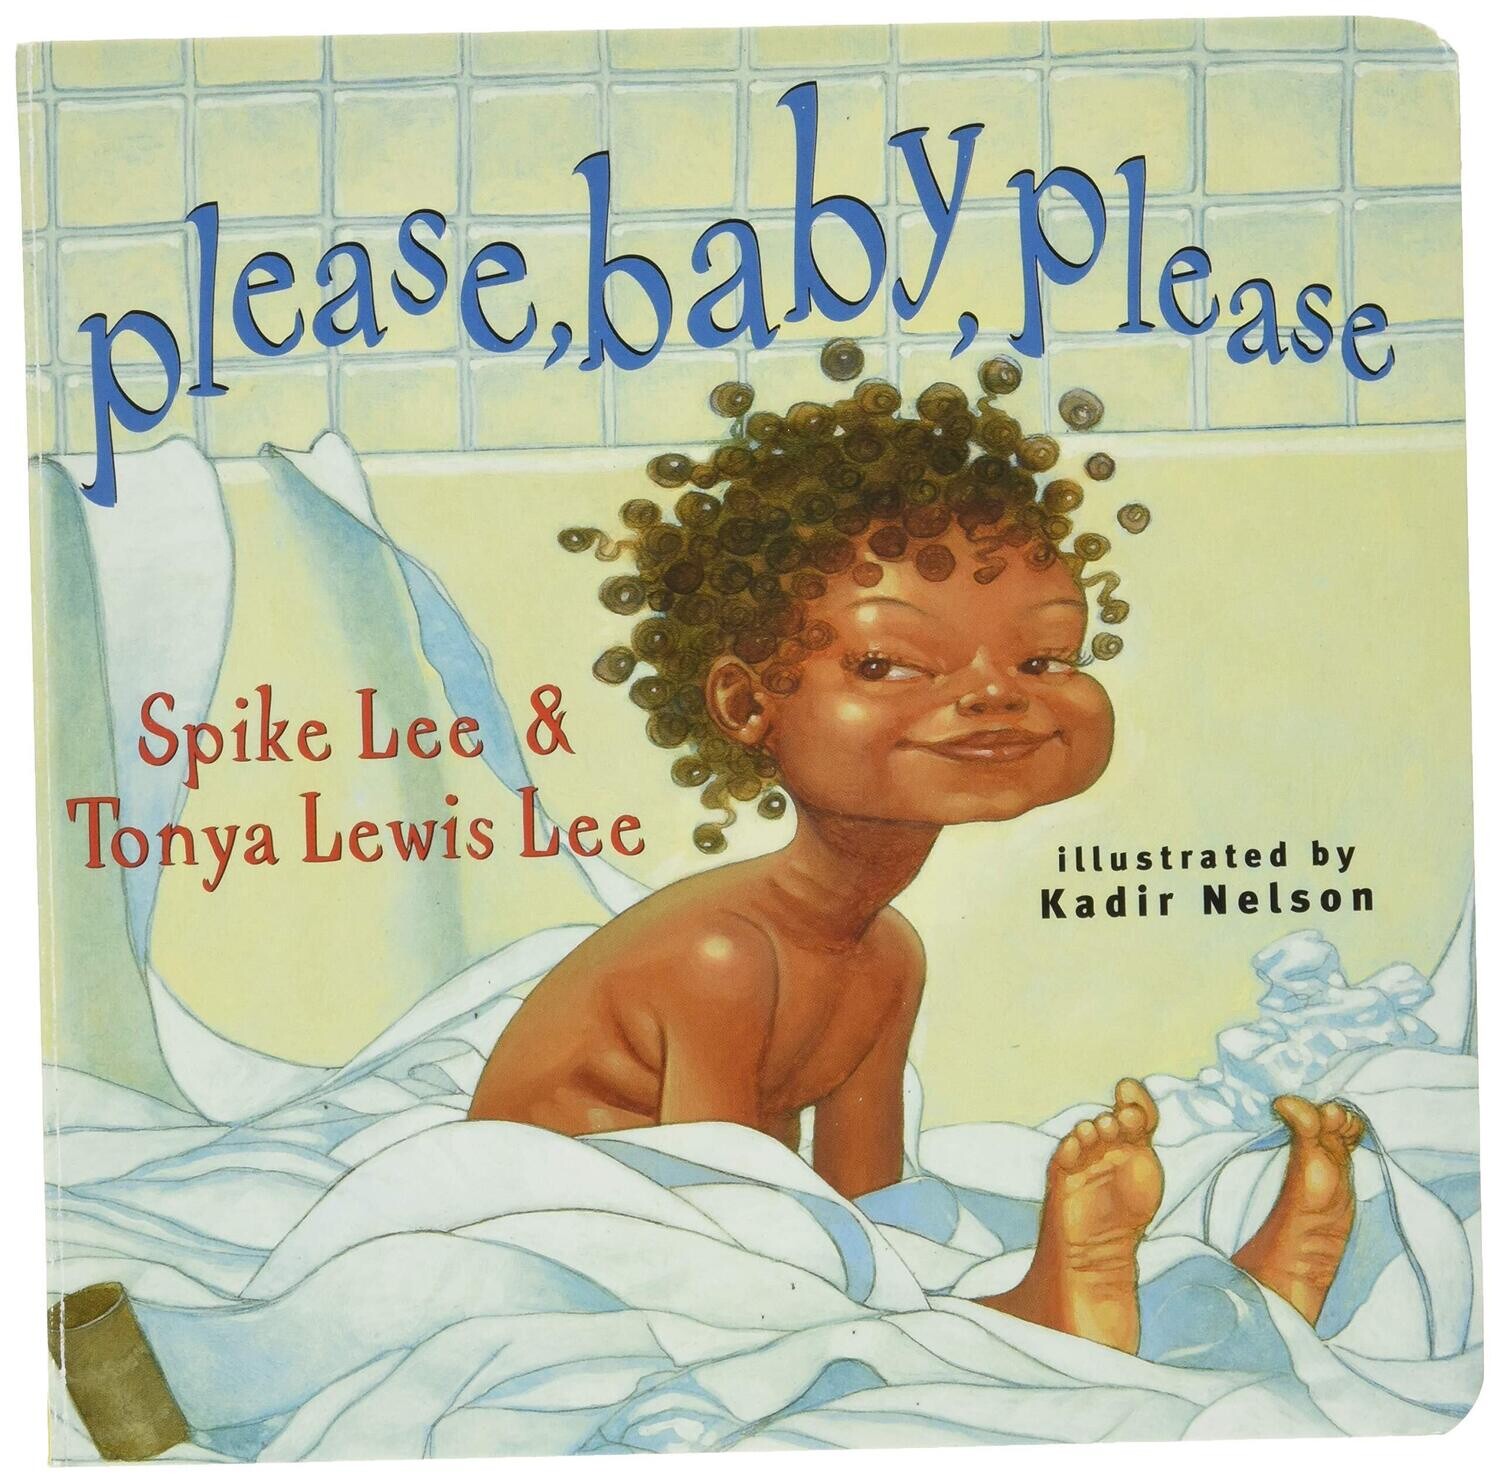 Please, Baby, Please by Spike Lee & Tonya Lewis Lee